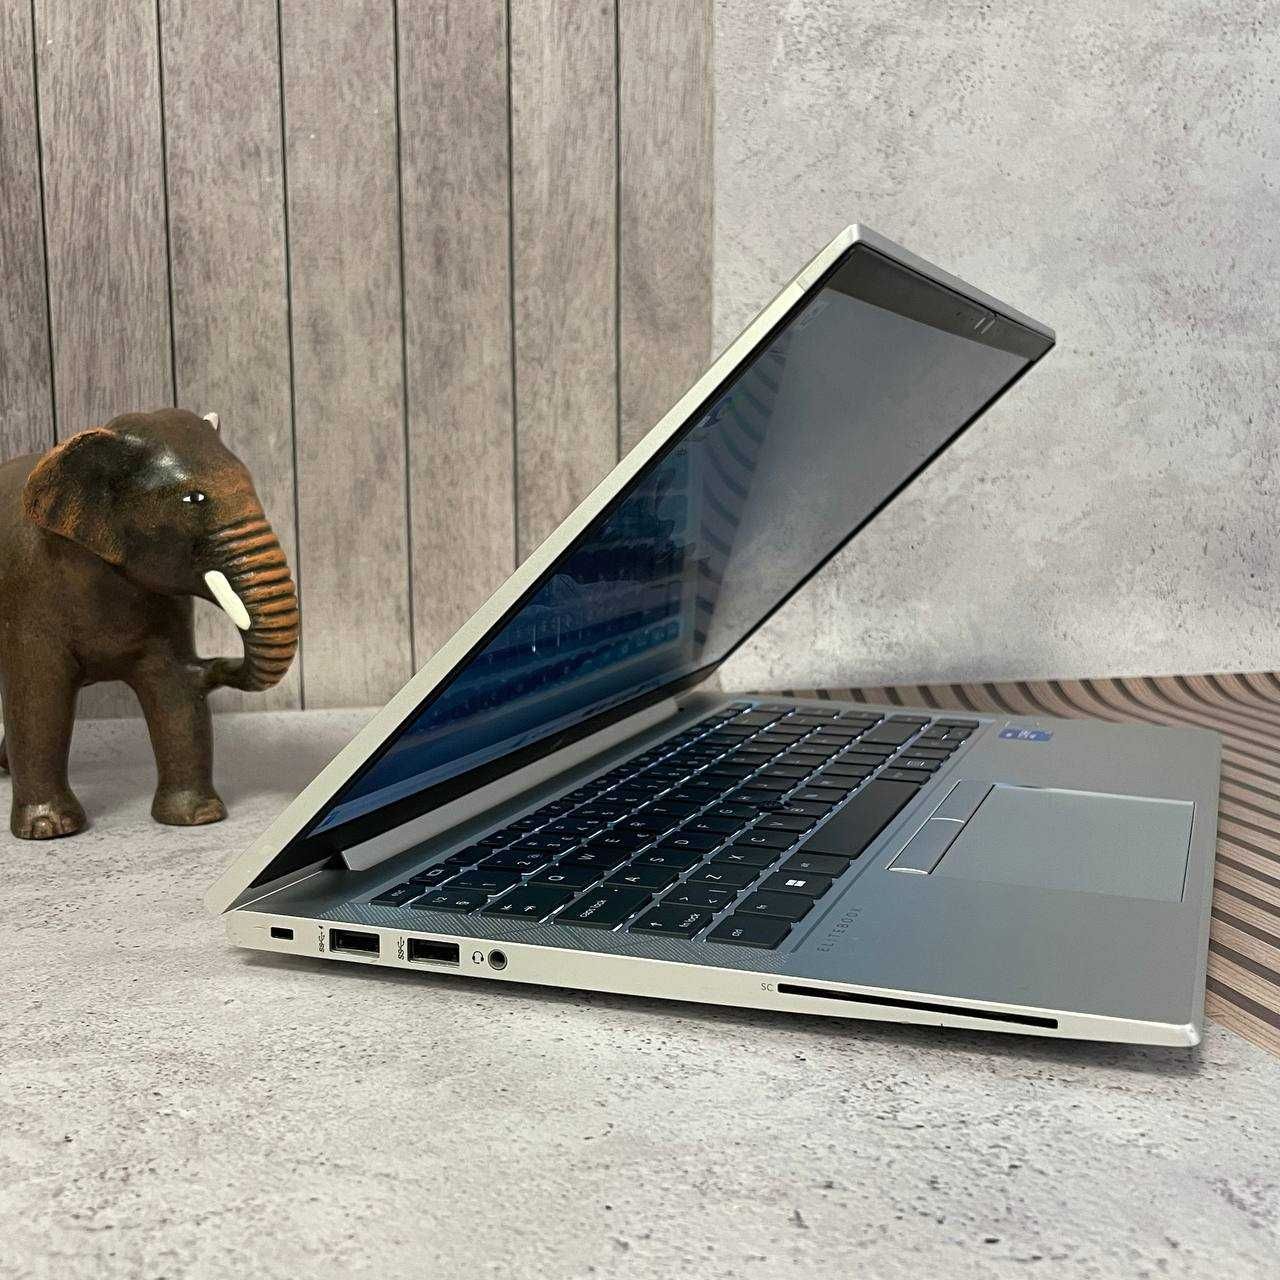 Ноутбук HP EliteBook 840 G8